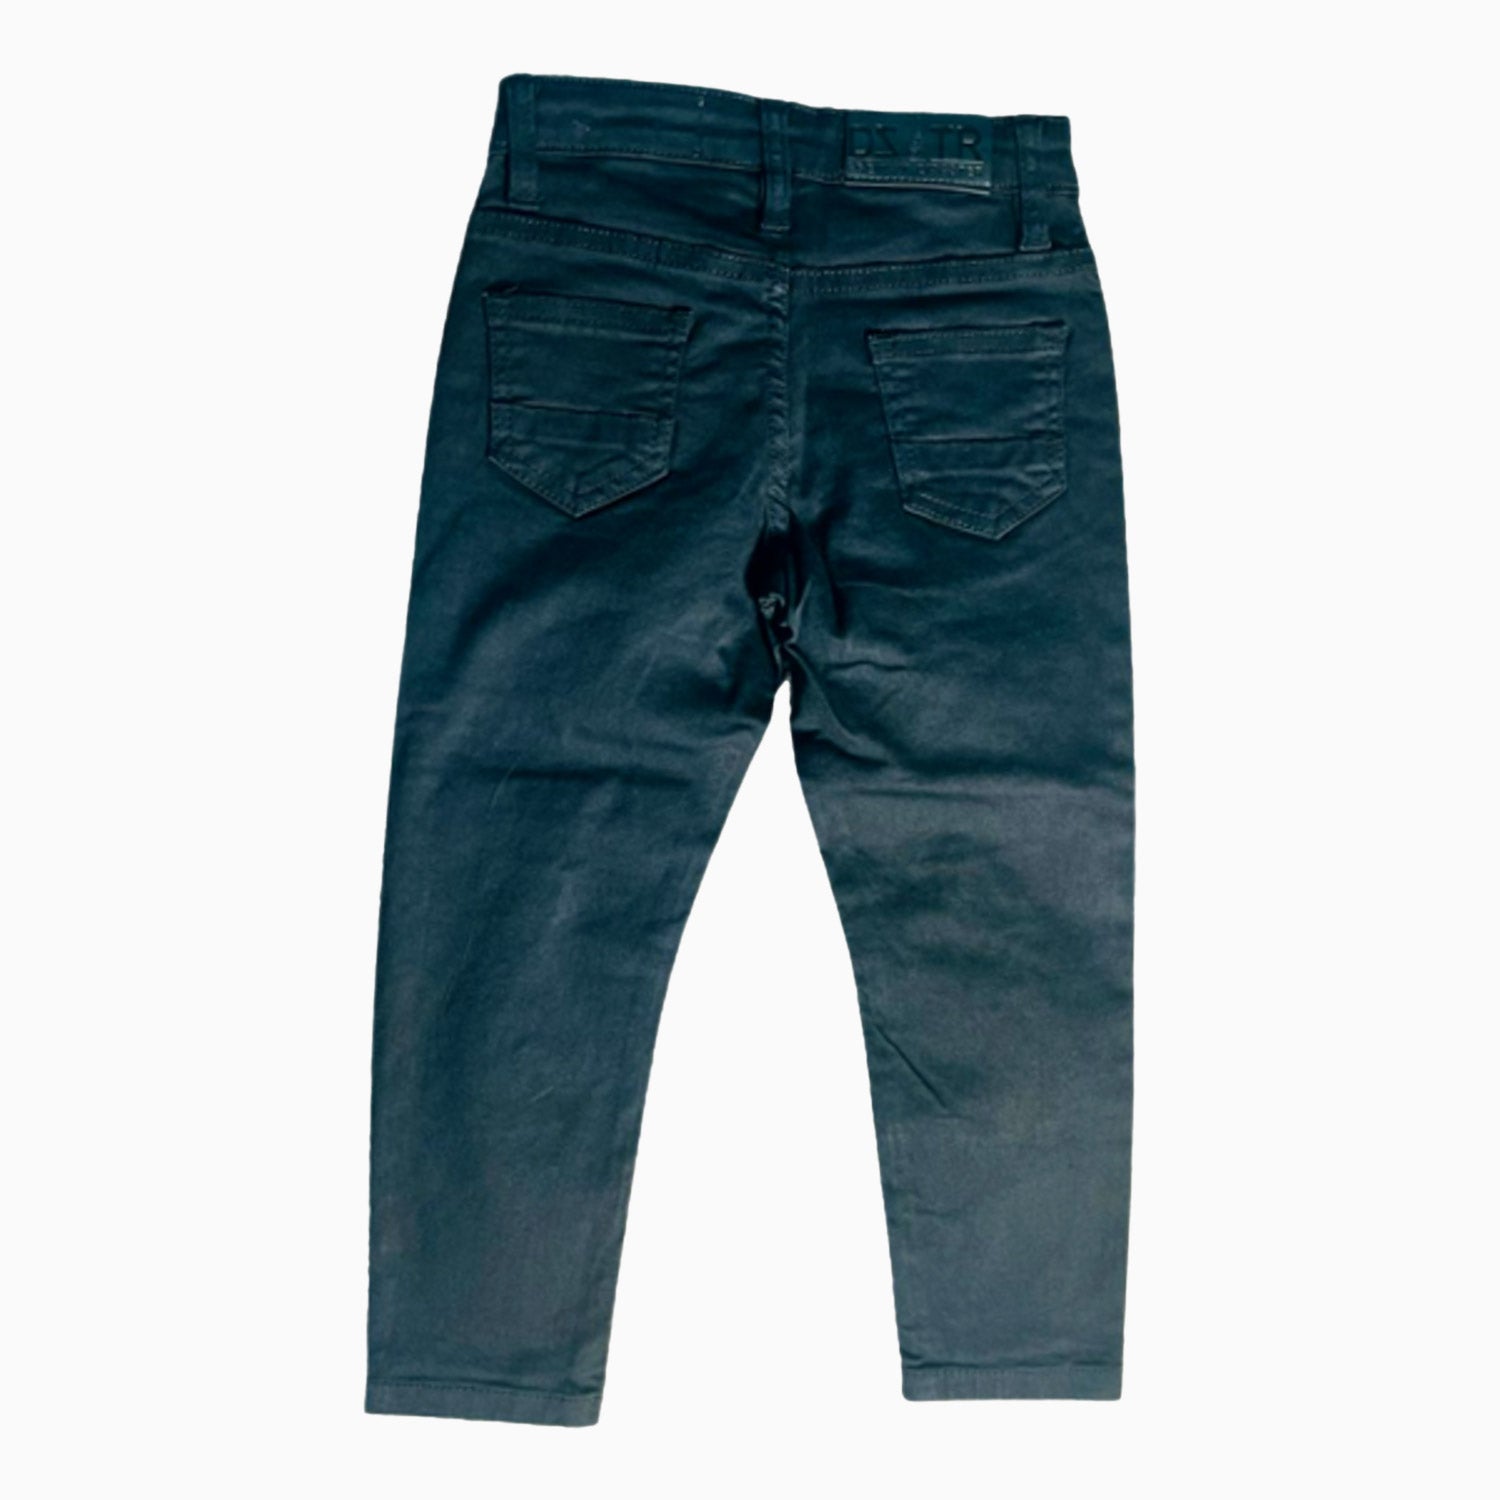 premium-disaster-kids-rips-jeans-denim-skinny-pant-dztr-105b